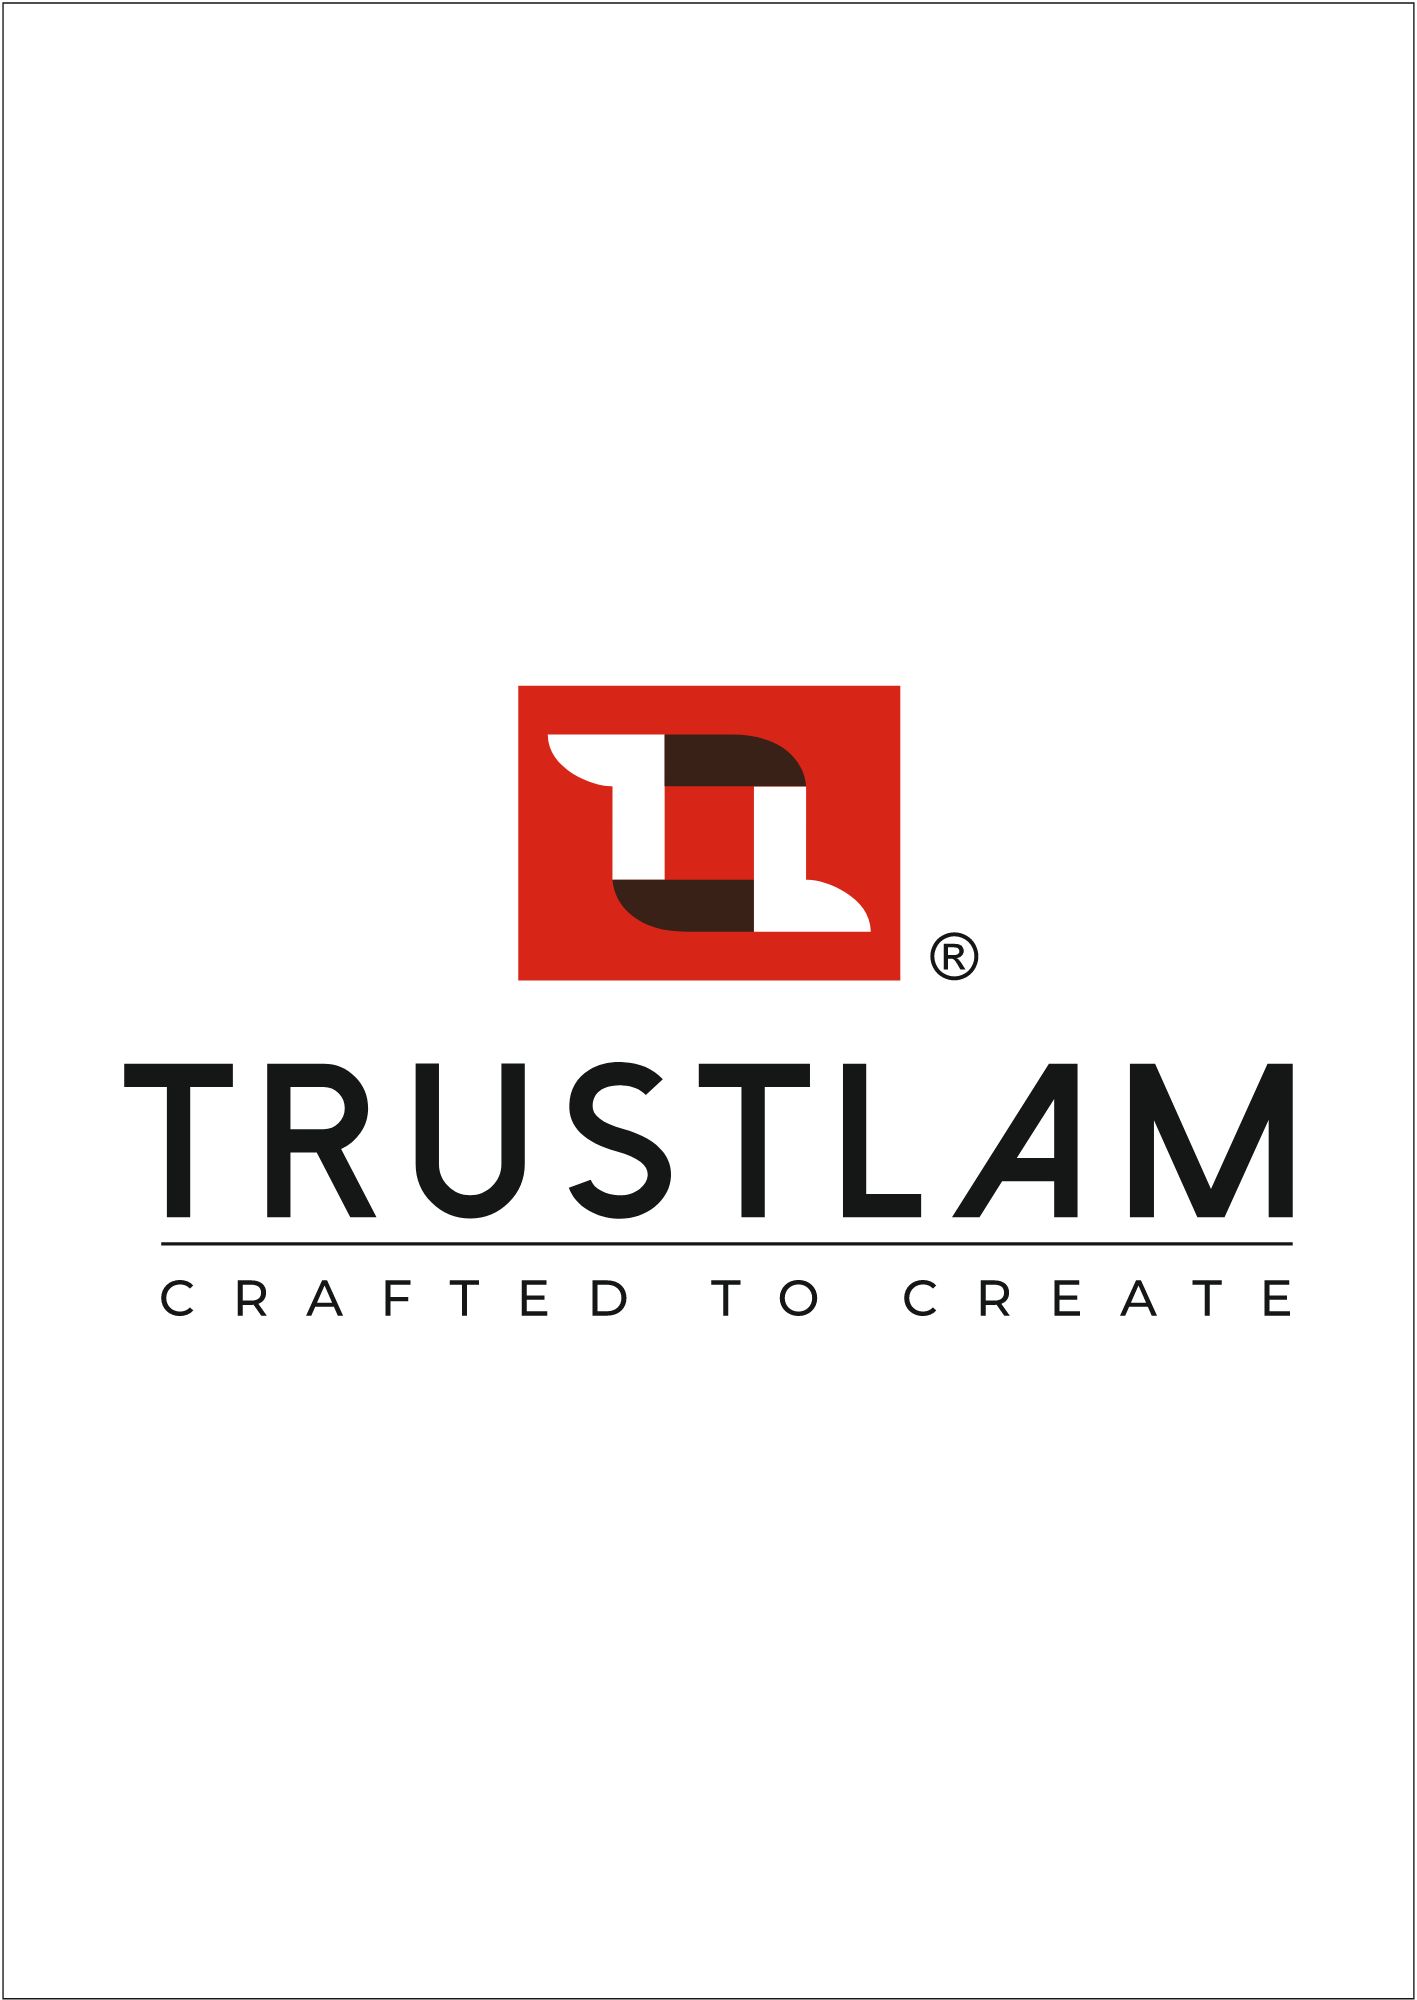 TrustLam